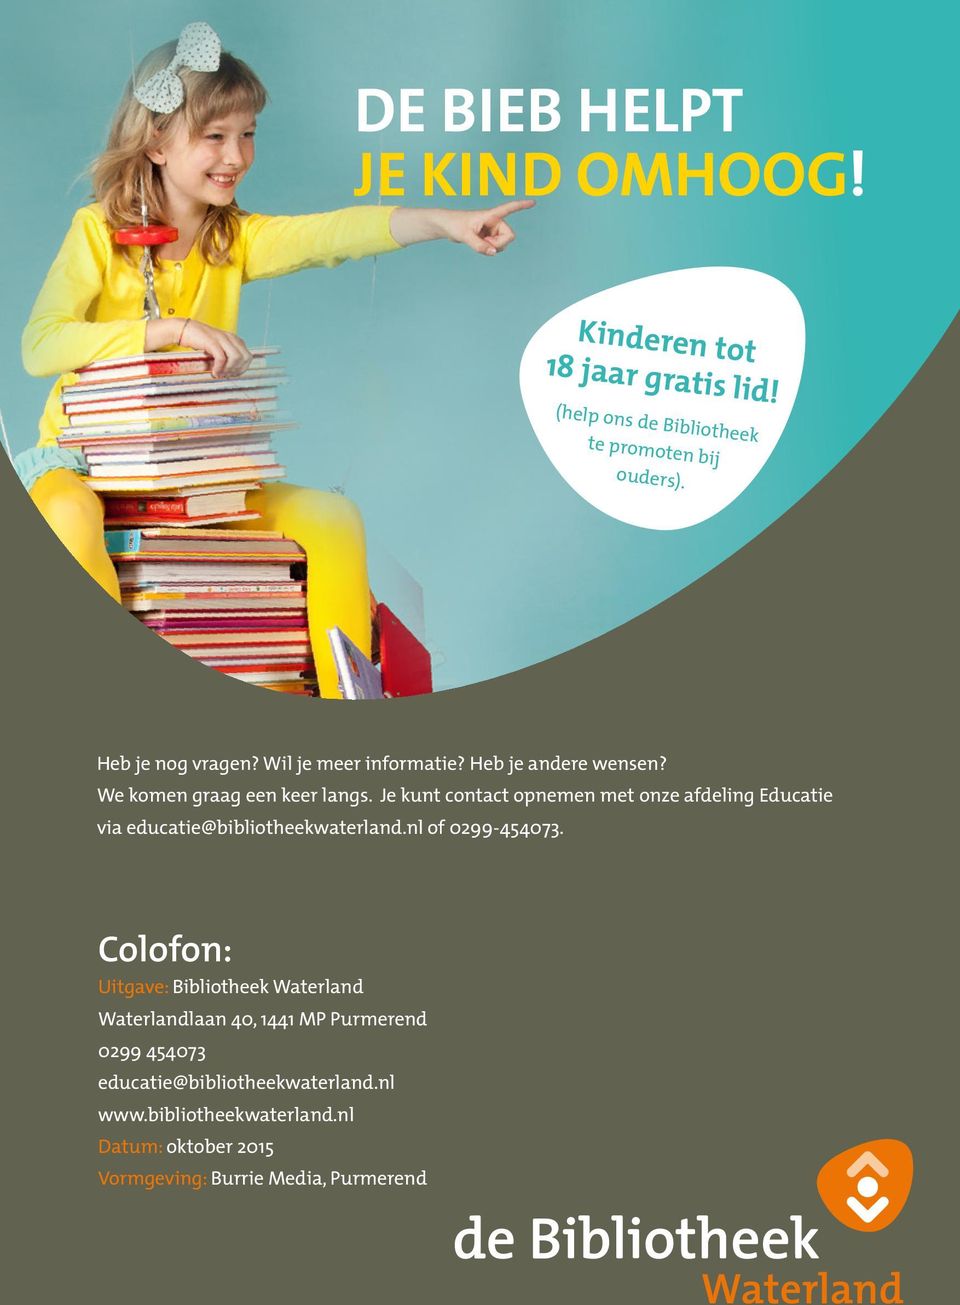 Je kunt contact opnemen met onze afdeling Educatie via educatie@bibliotheekwaterland.nl of 0299-454073.